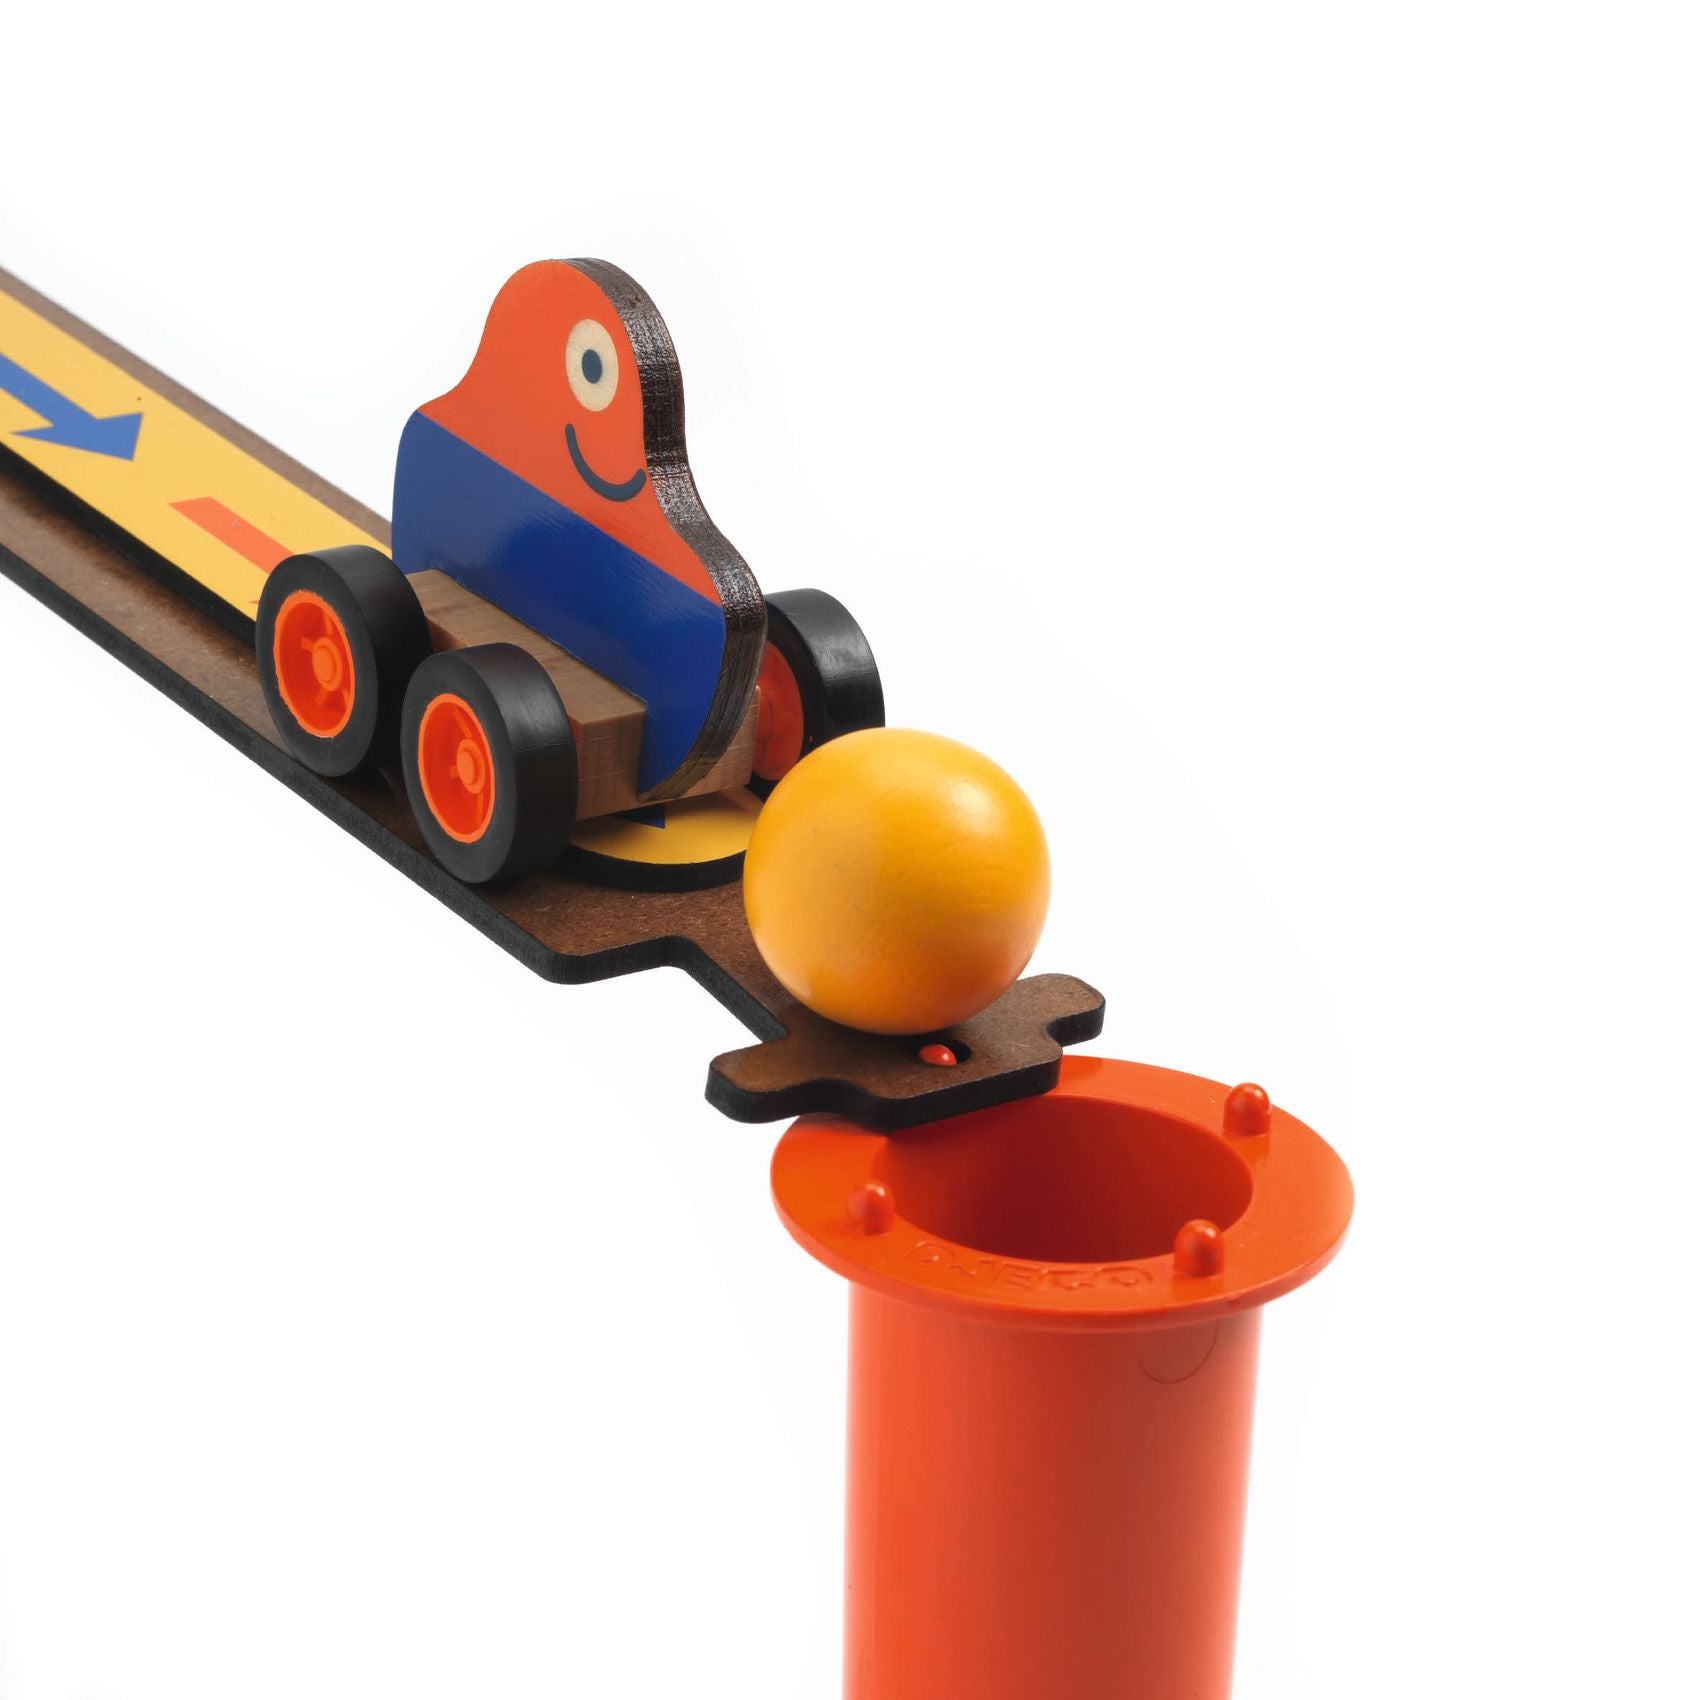 Jeu de réaction | Zig & Go Junior - 42 pcs-Djeco-Super Châtaigne-Jeux et jouets : Product type